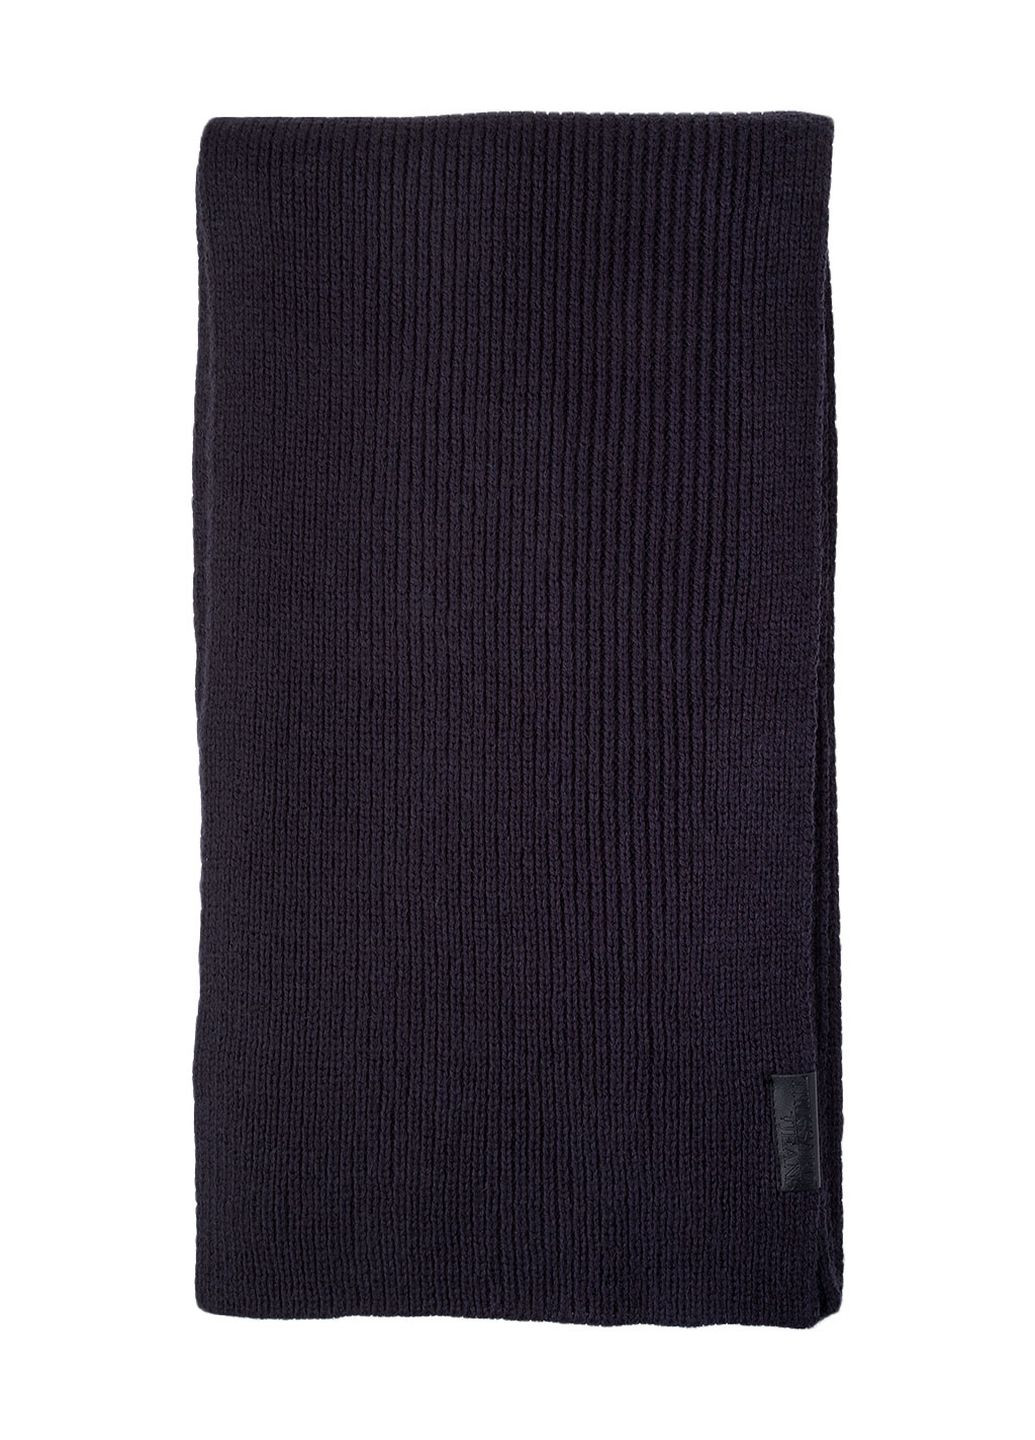 Синій зимній комплект (шапка / шарф / рукавички) Trussardi Jeans